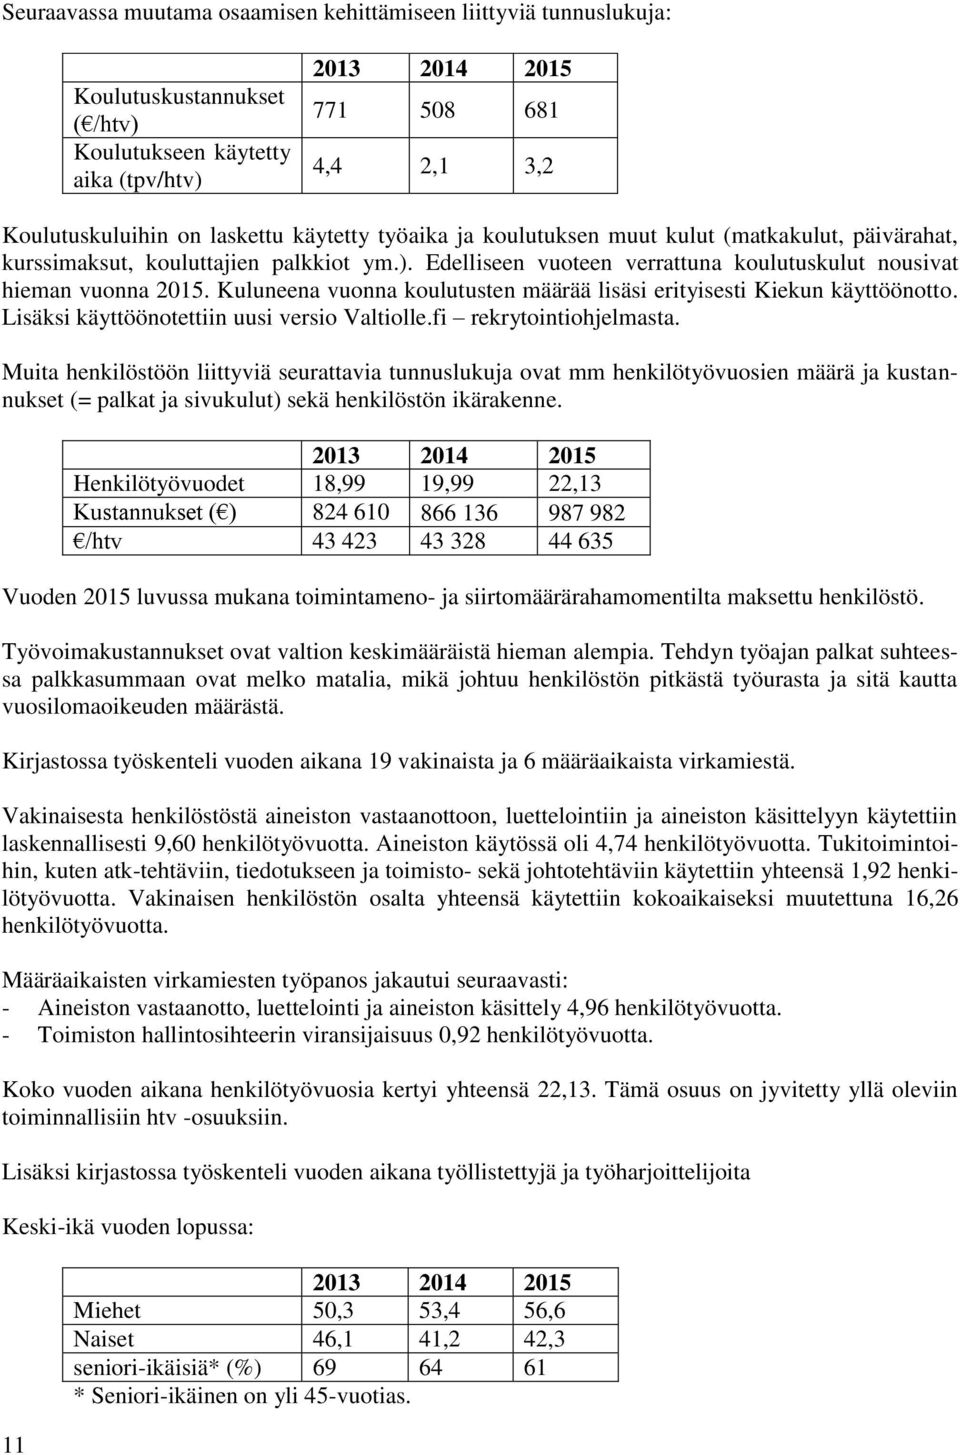 Kuluneena vuonna koulutusten määrää lisäsi erityisesti Kiekun käyttöönotto. Lisäksi käyttöönotettiin uusi versio Valtiolle.fi rekrytointiohjelmasta.